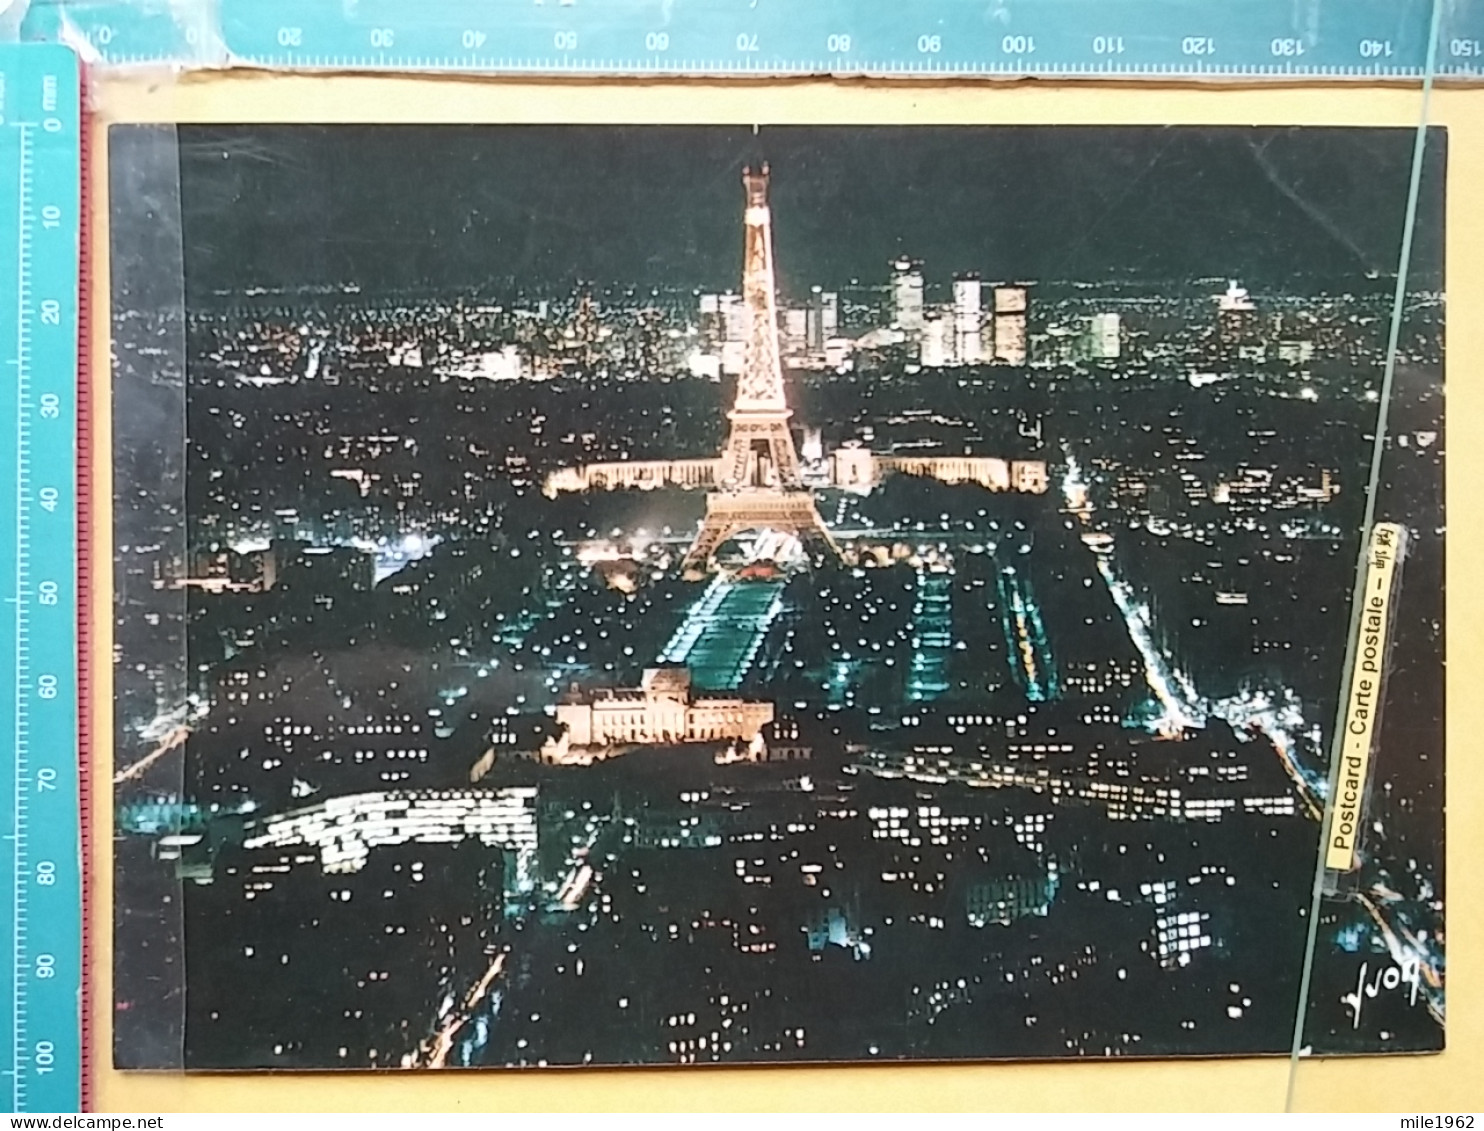 KOV 11-96 - PARIS, France, Tour Eiffel,  - Tour Eiffel